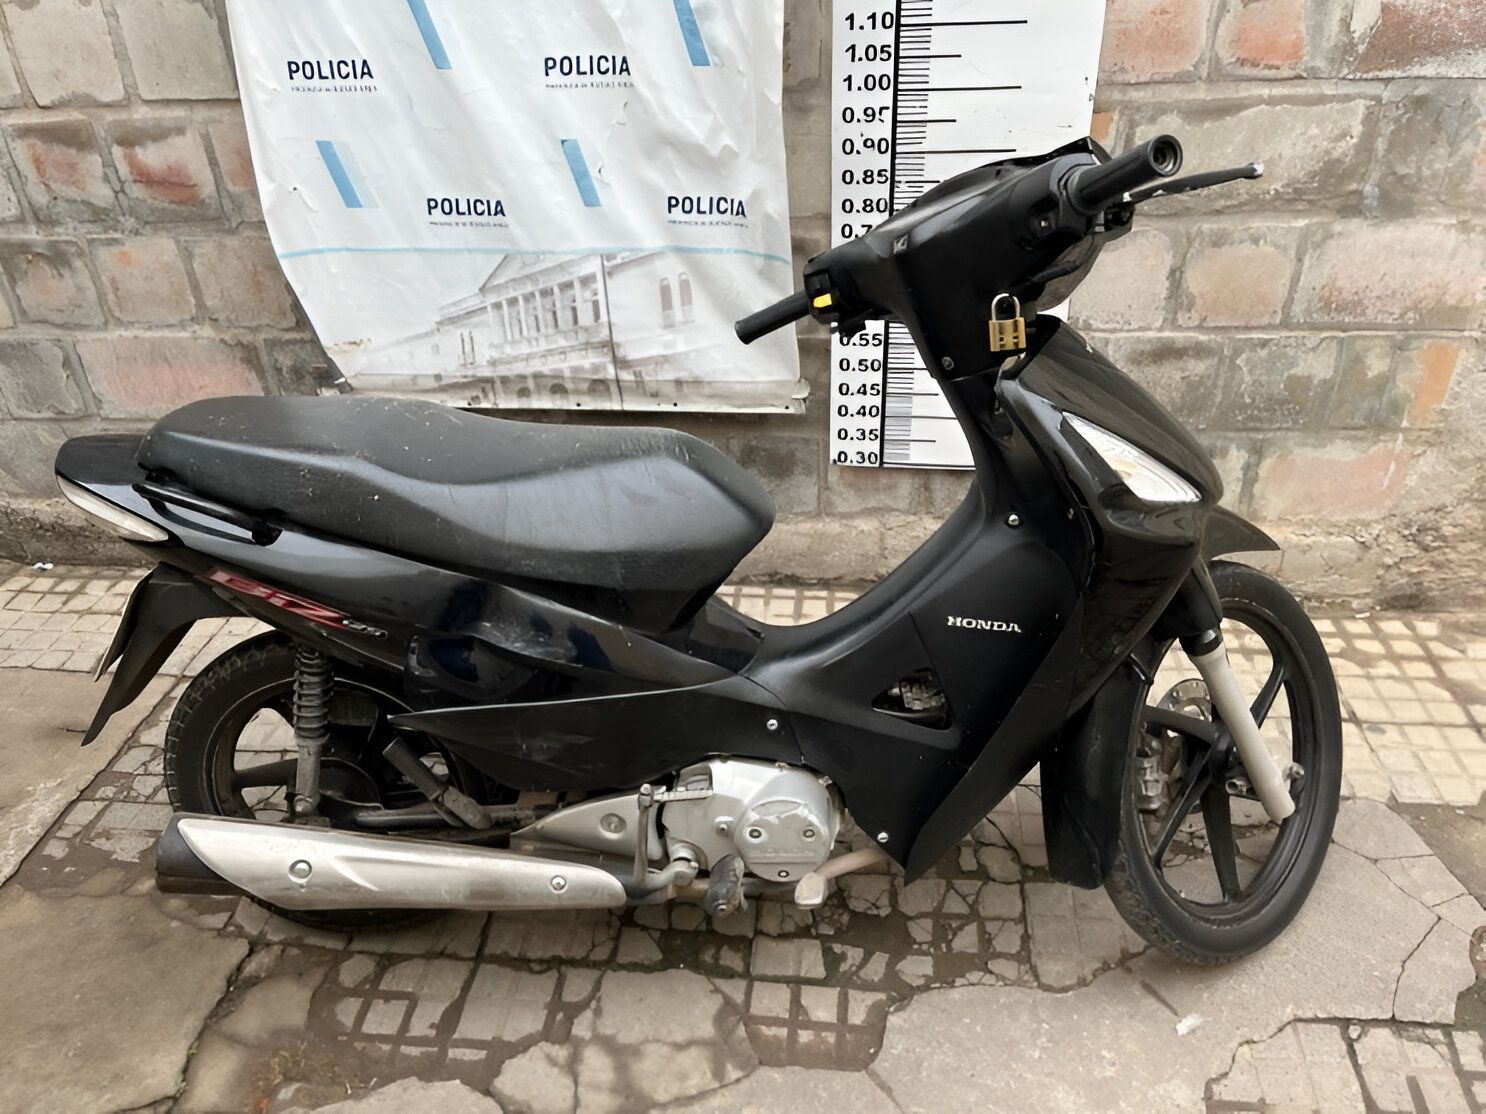 La moto tenía pedido de secuestro activo en Zárate/Campana.